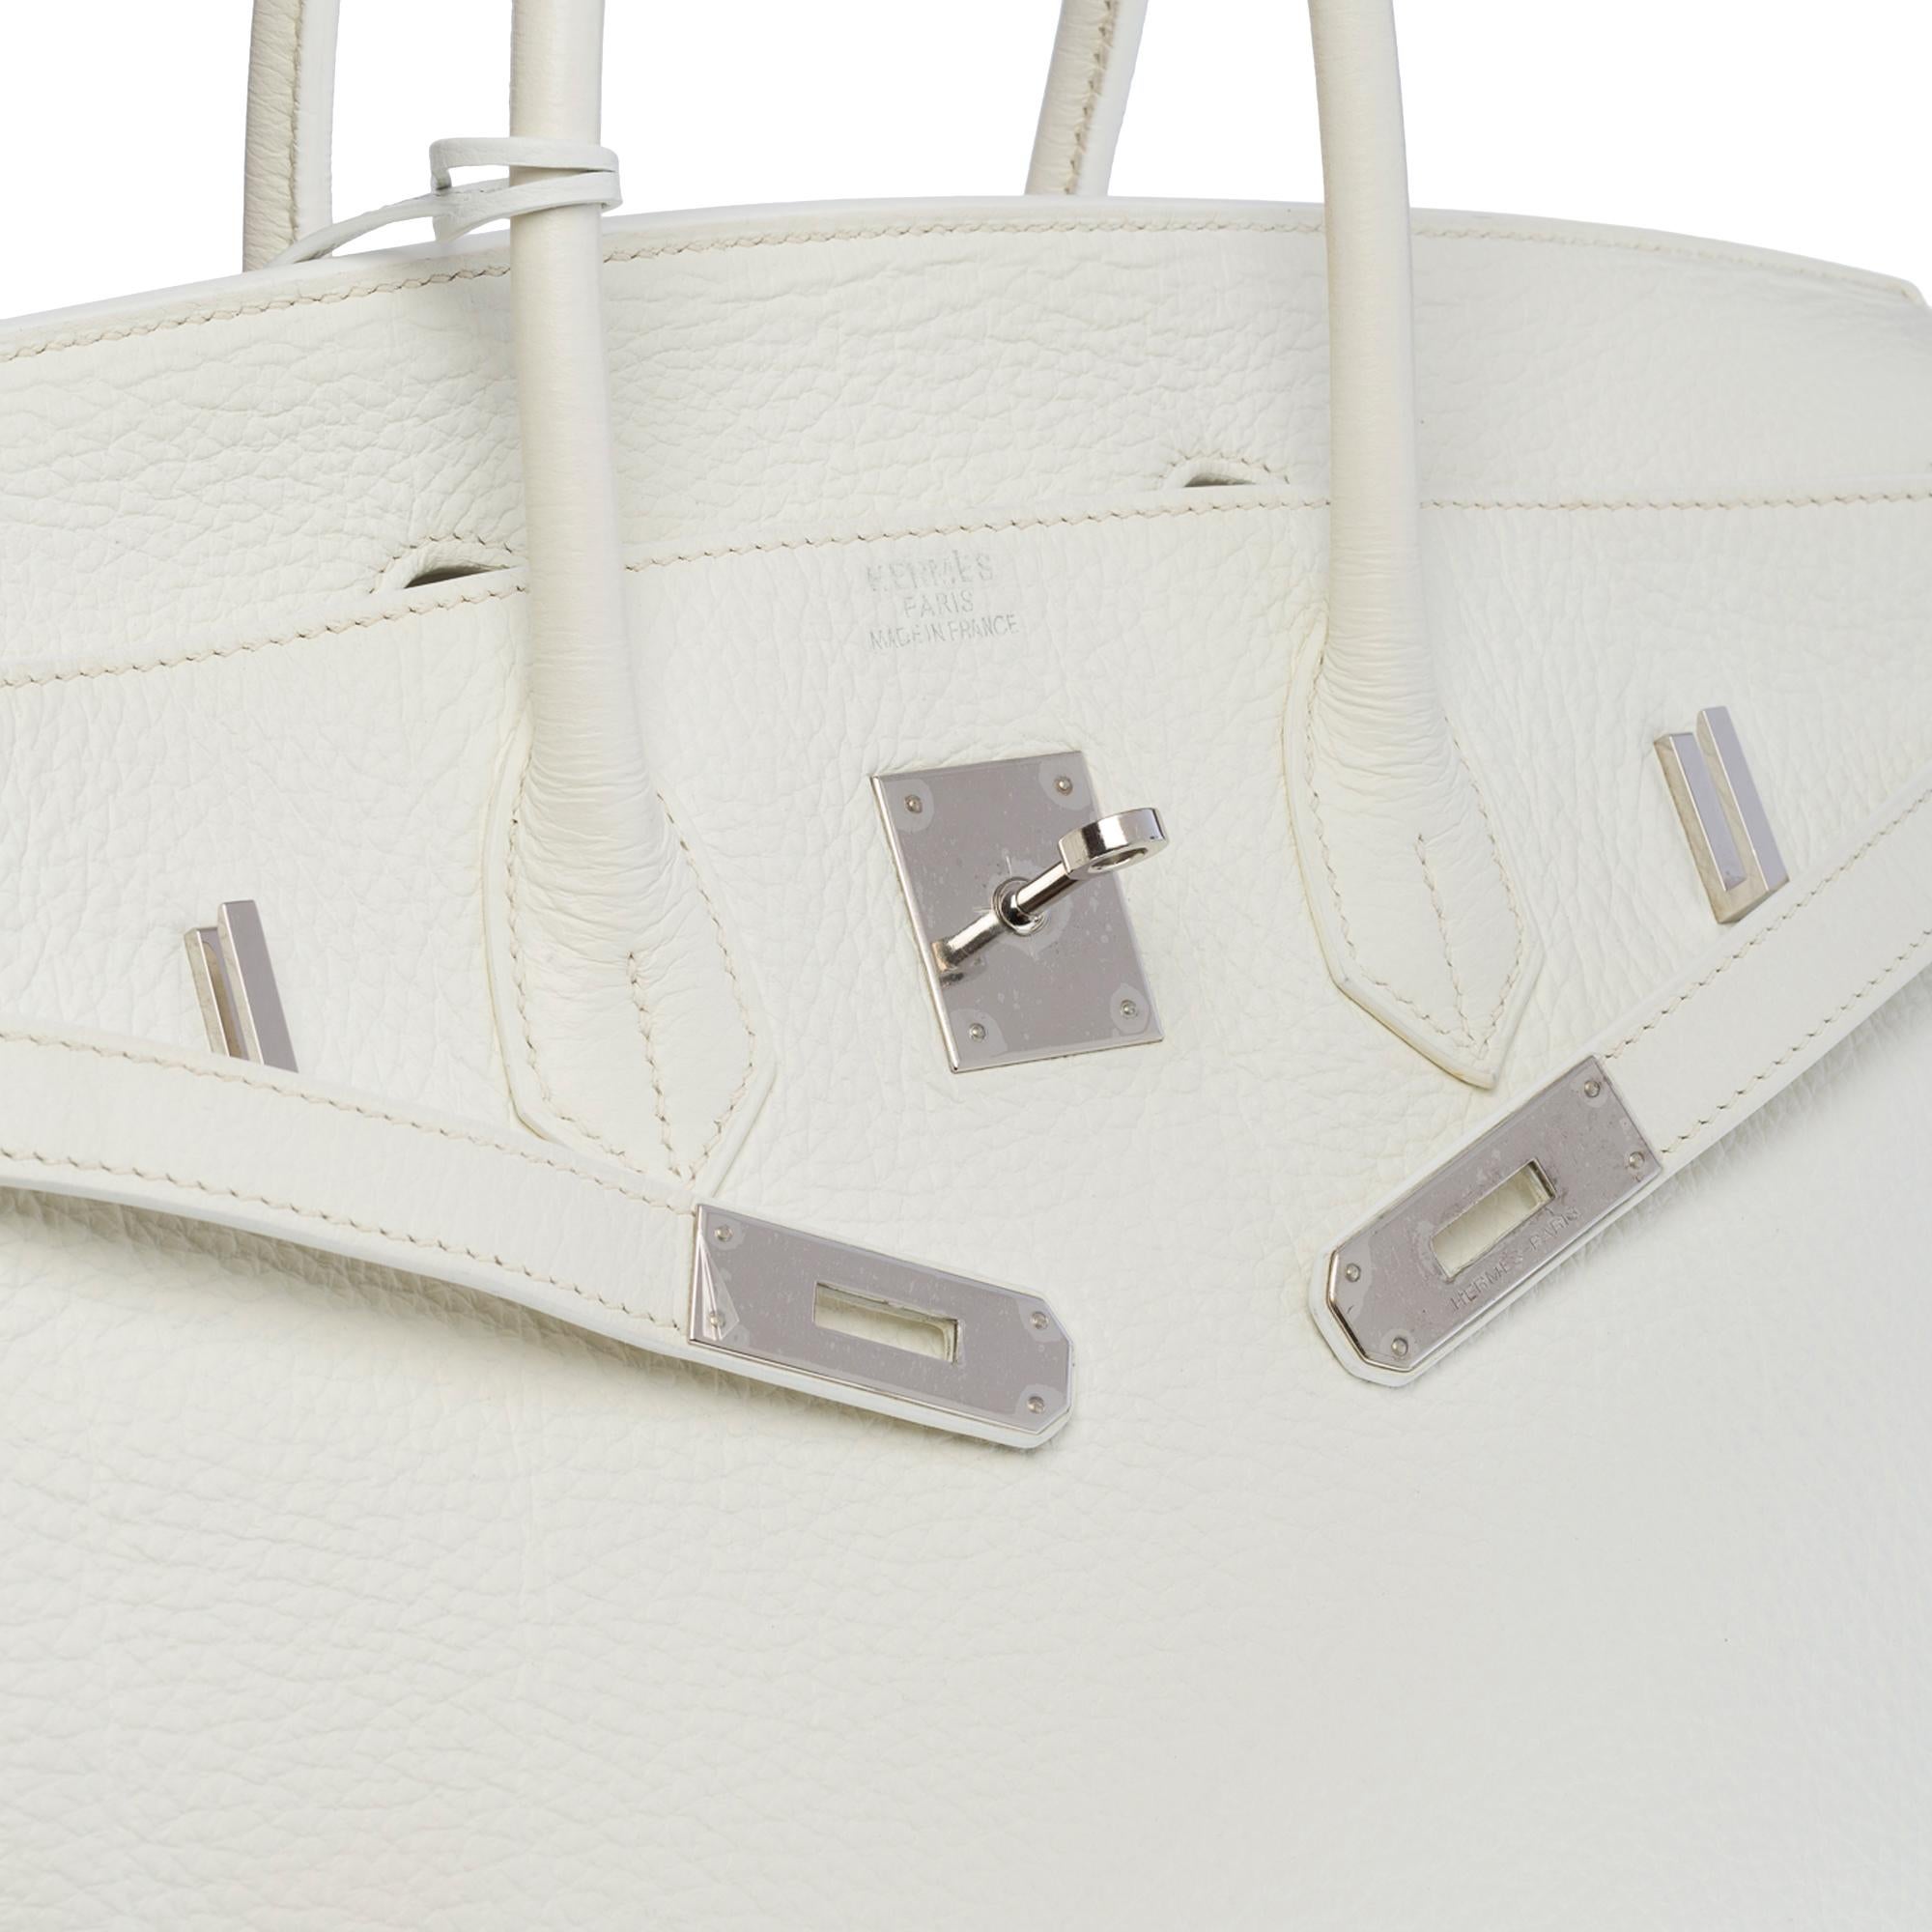 Stunning Hermès Birkin 35 handbag in white Togo leather, SHW 2